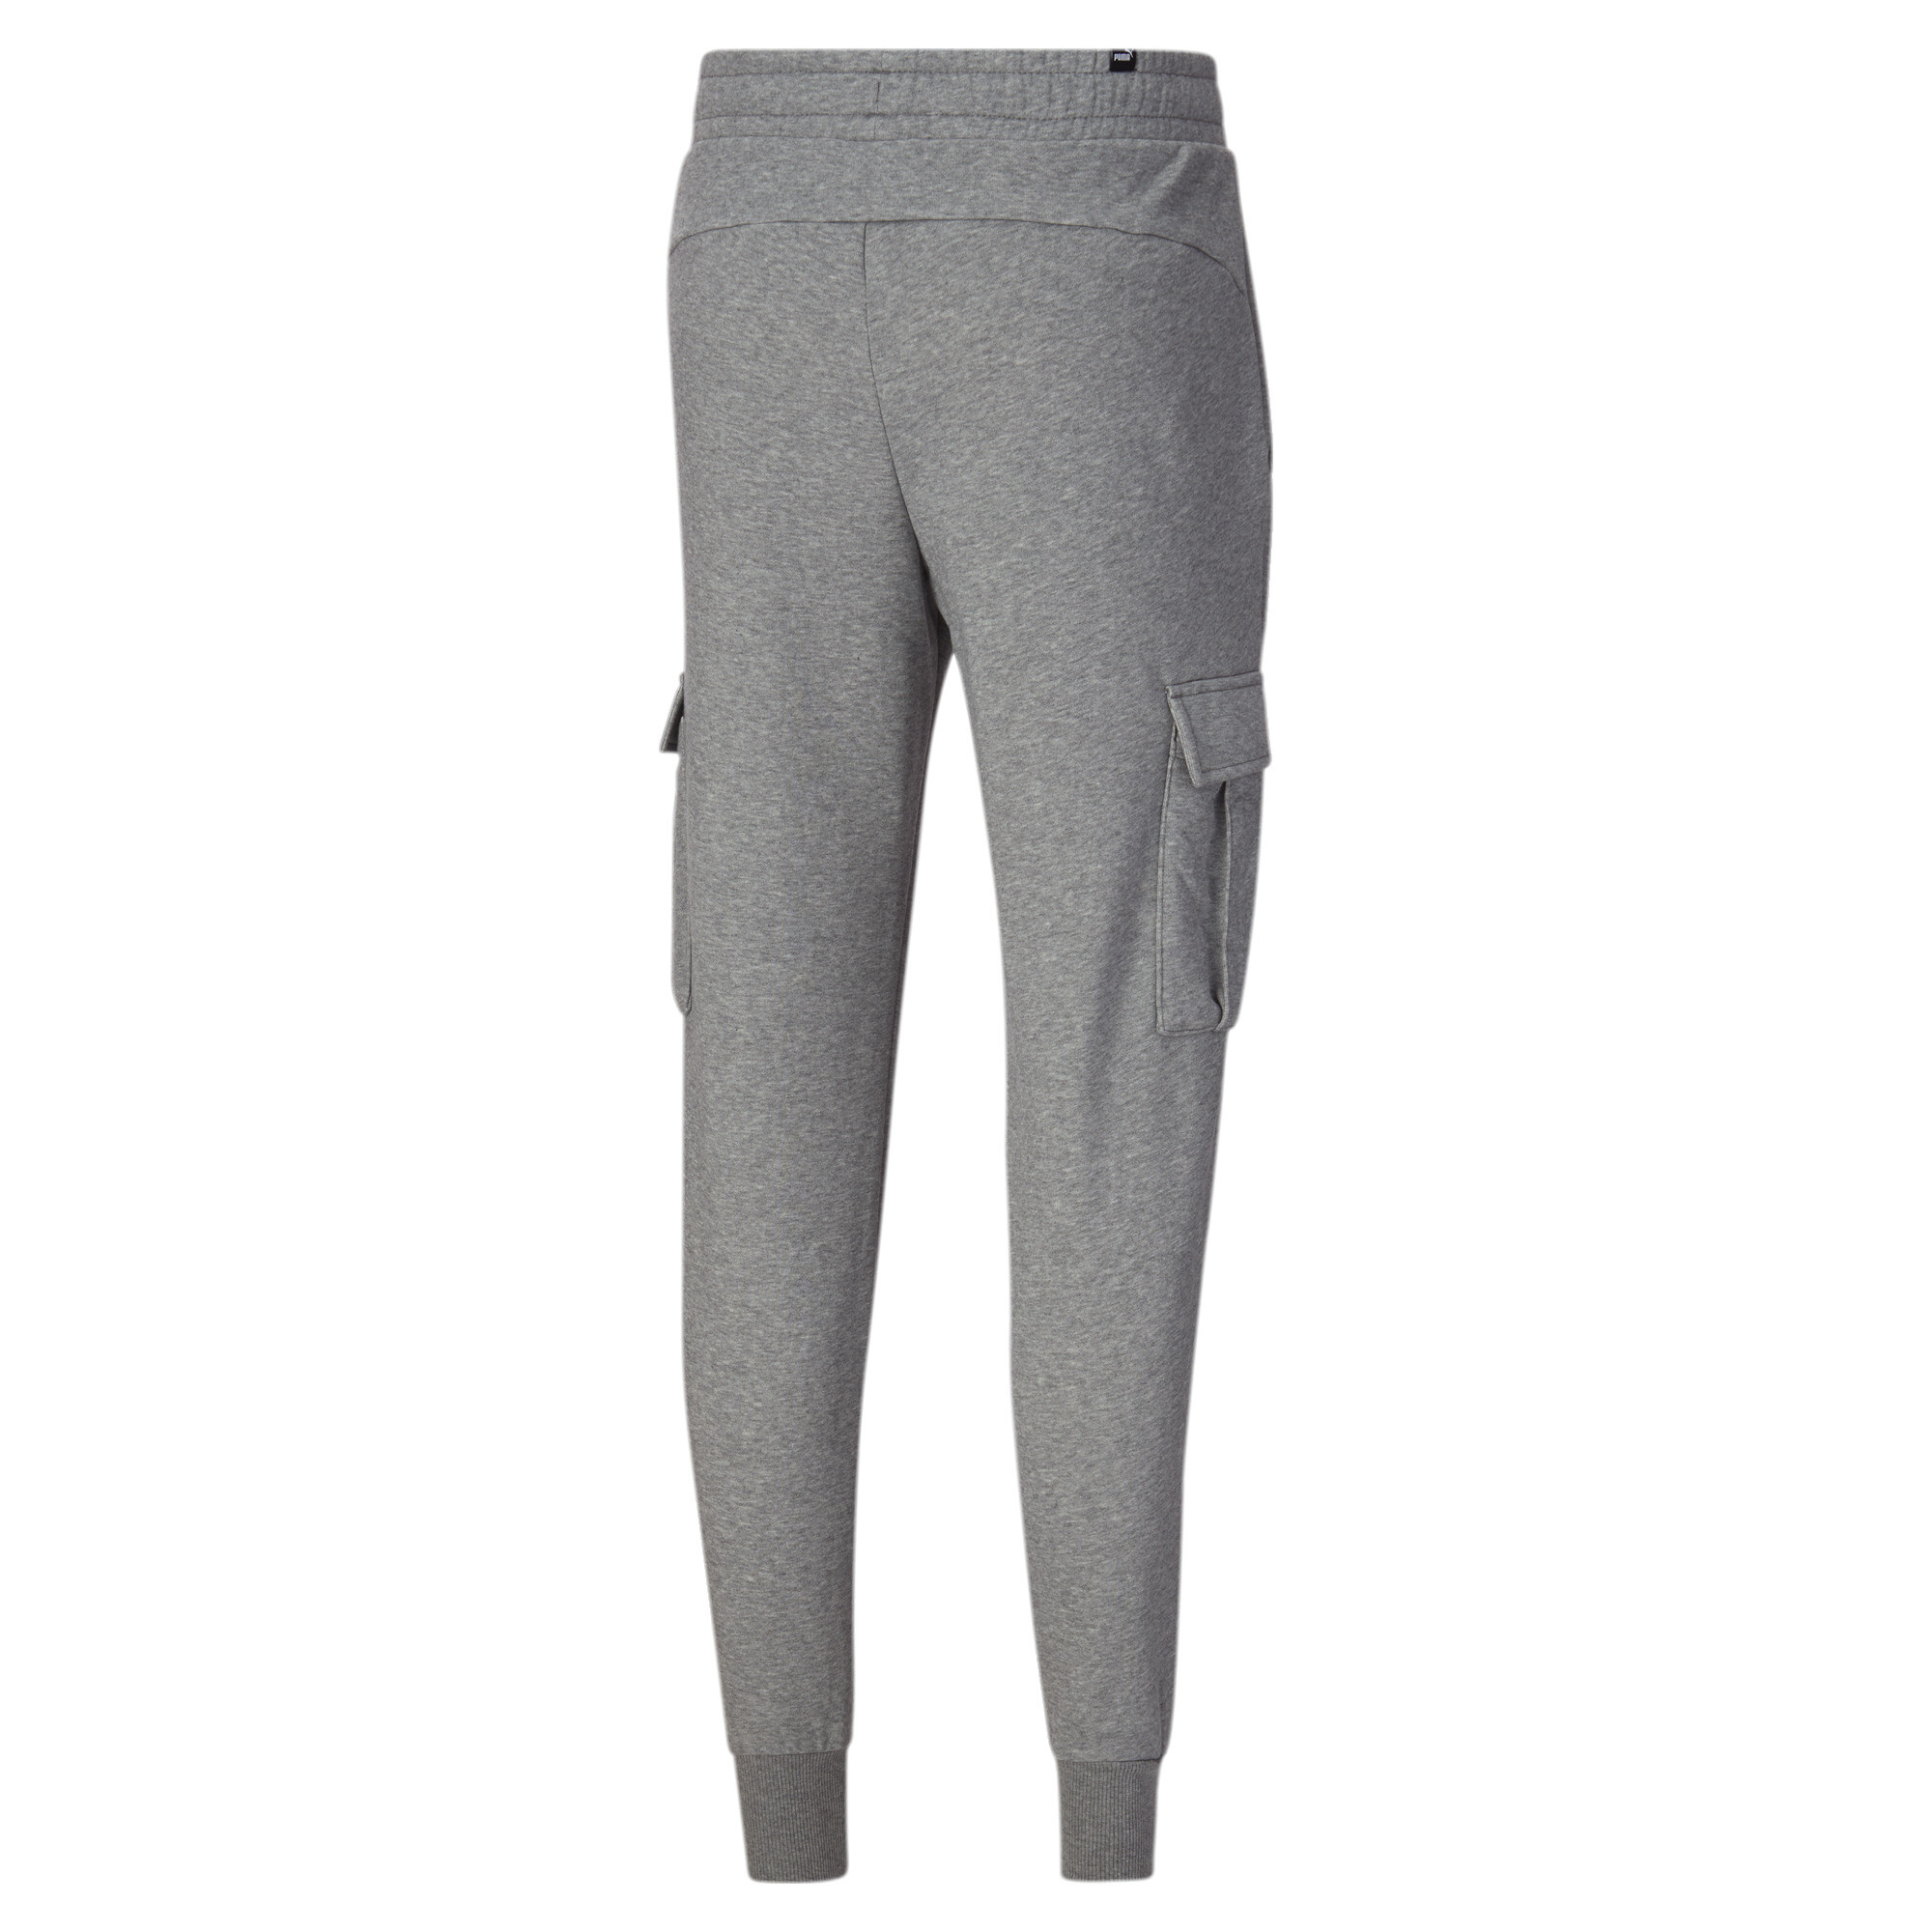 PUMA Size L Men's Essentials Pocket Pants - Medium Grey Heather 